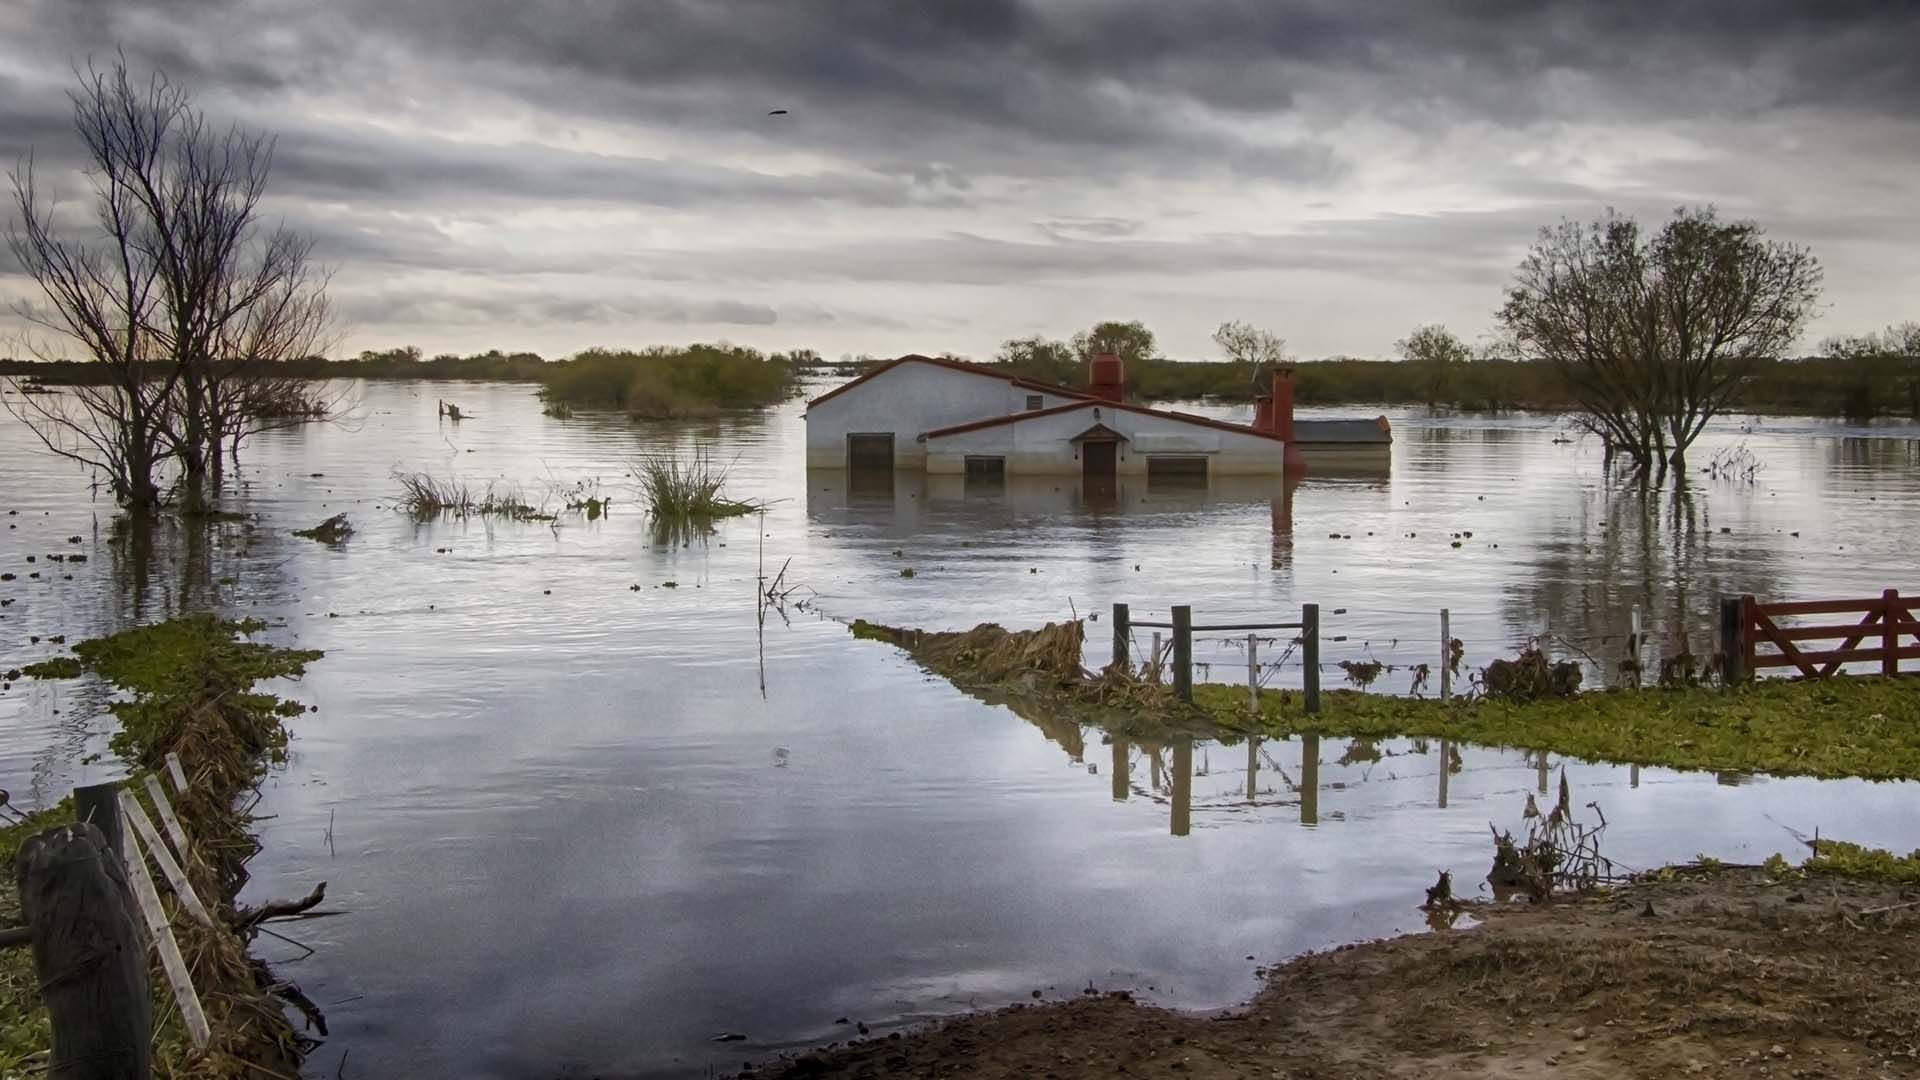 El cambio climático altera el patrón de lluvias y tormentas y aumenta la frecuencia de fenómenos extremos, como inundaciones (Getty Images)